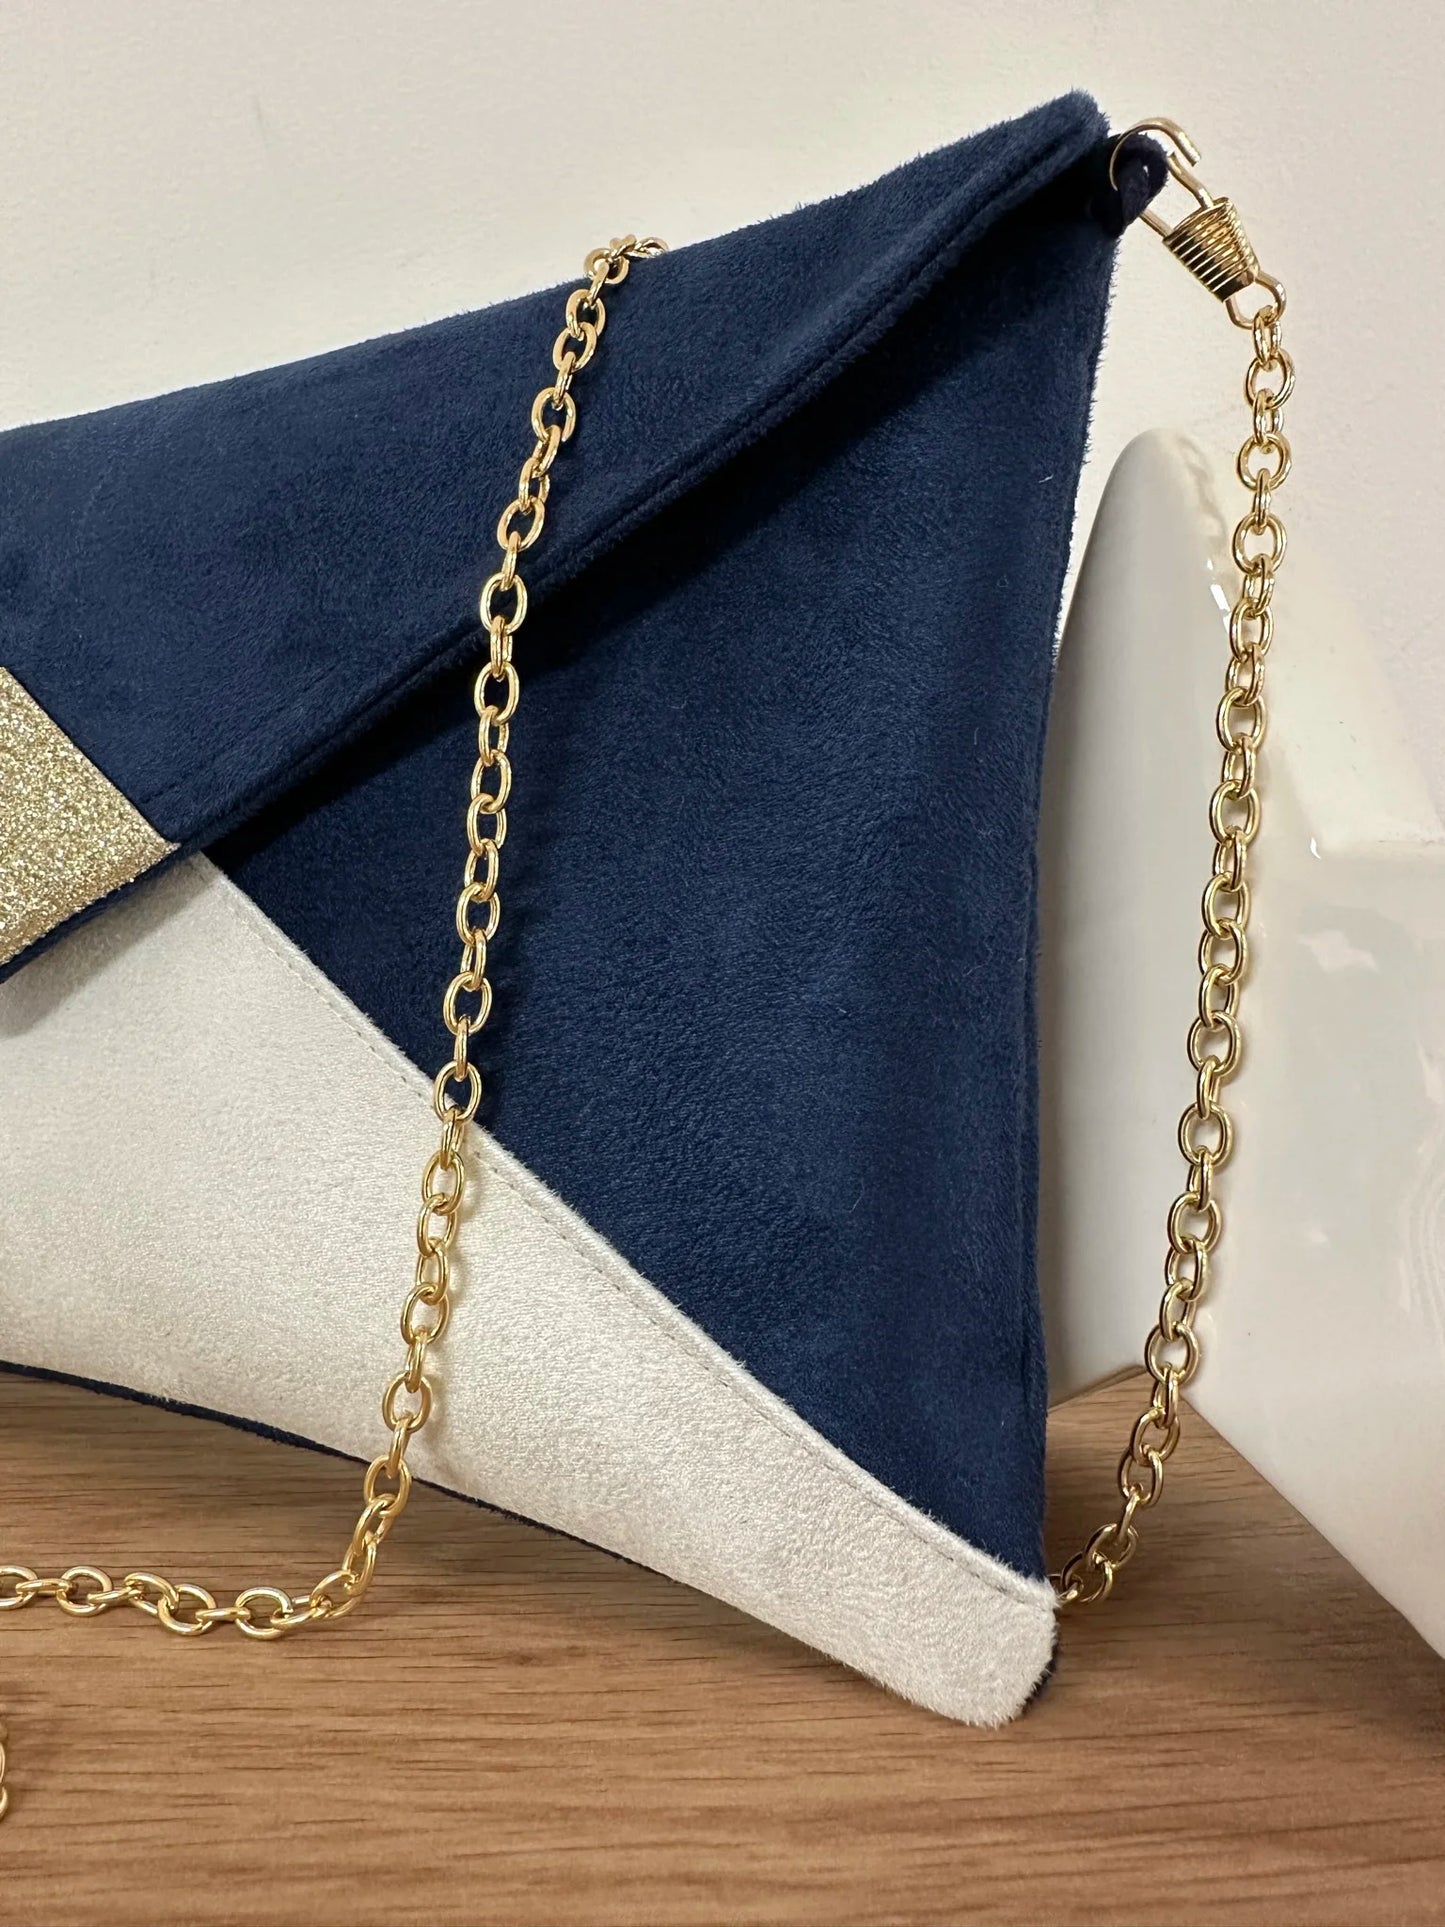 La chainette dorée amovible du sac pochette Isa bleu marine et blanc à paillettes dorées,.